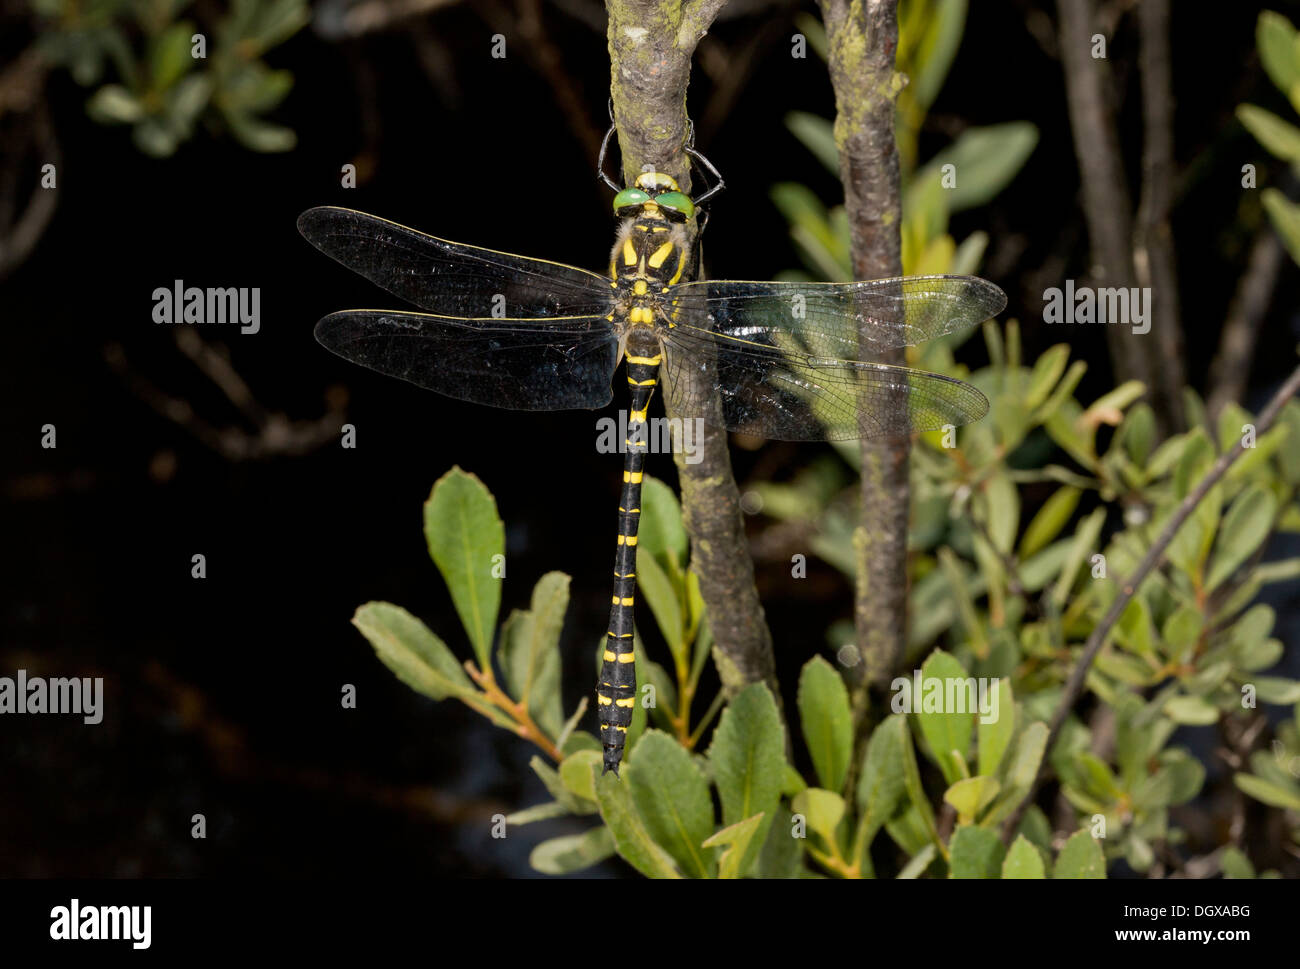 Goldenring masculin commun / Dragonfly à anneau doré, Cordulegaster boltonii perchée par le ruisseau. Banque D'Images